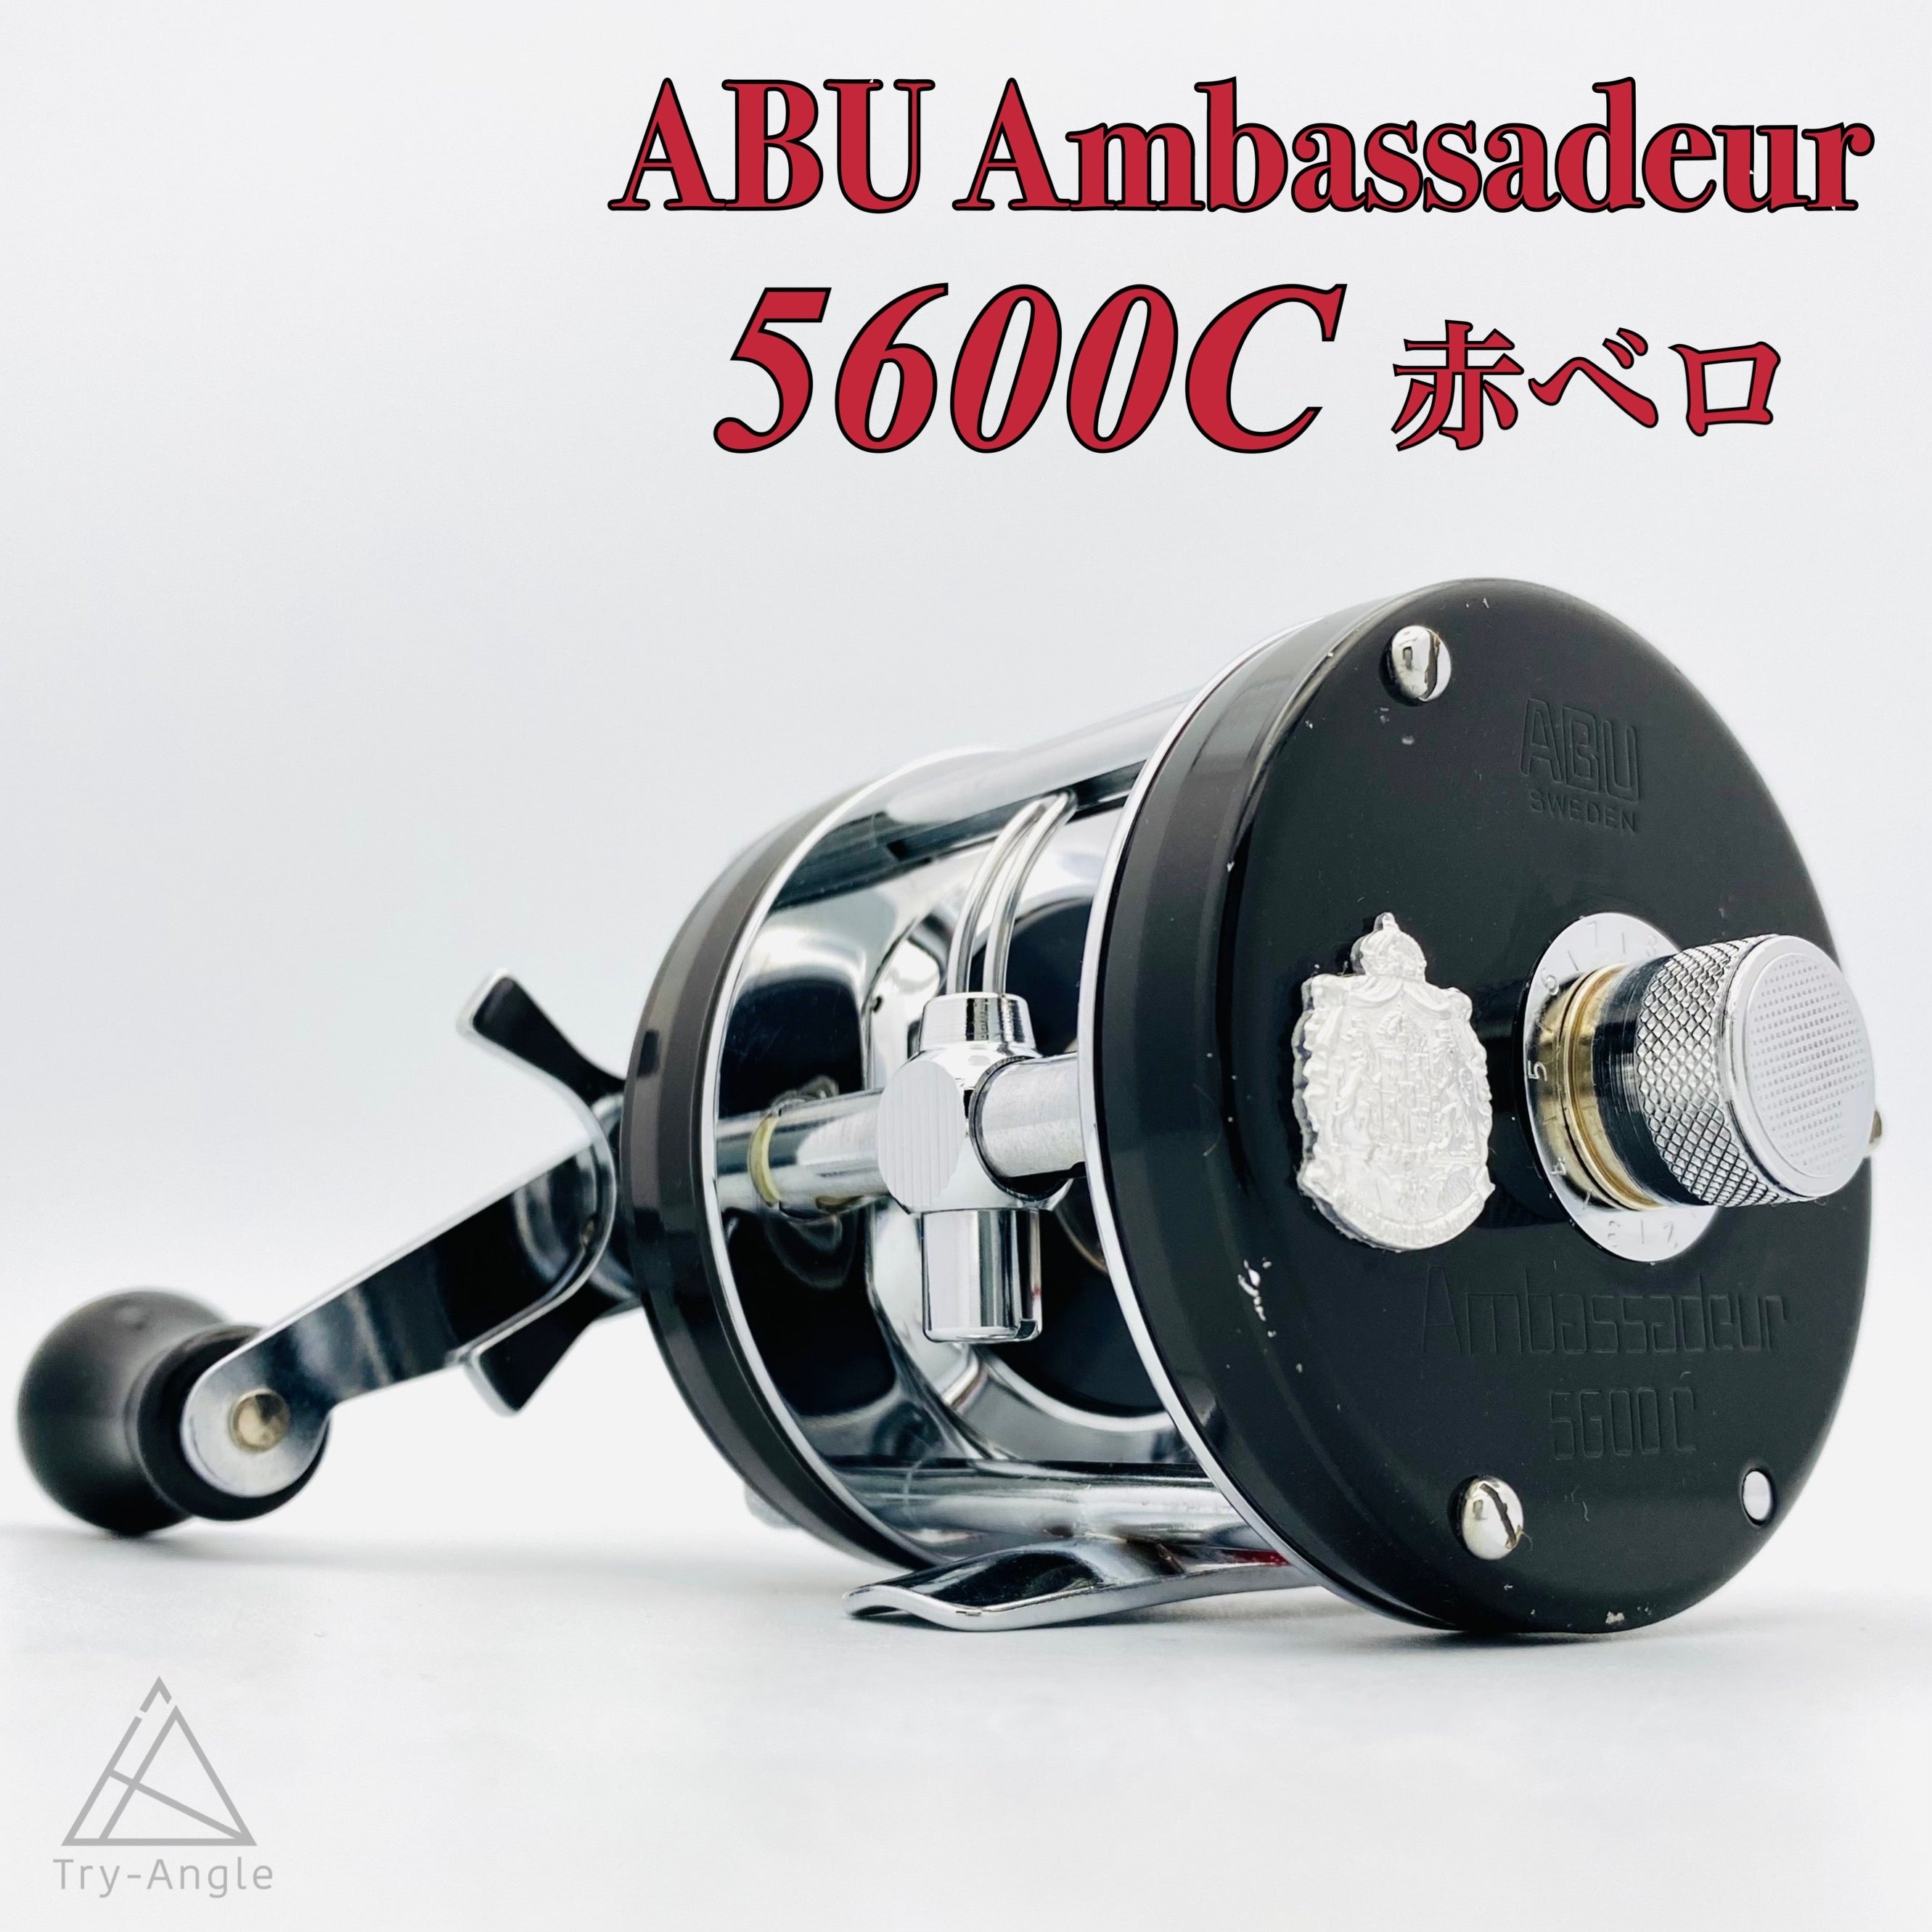 6,880円ABU Ambassadeur 5600C